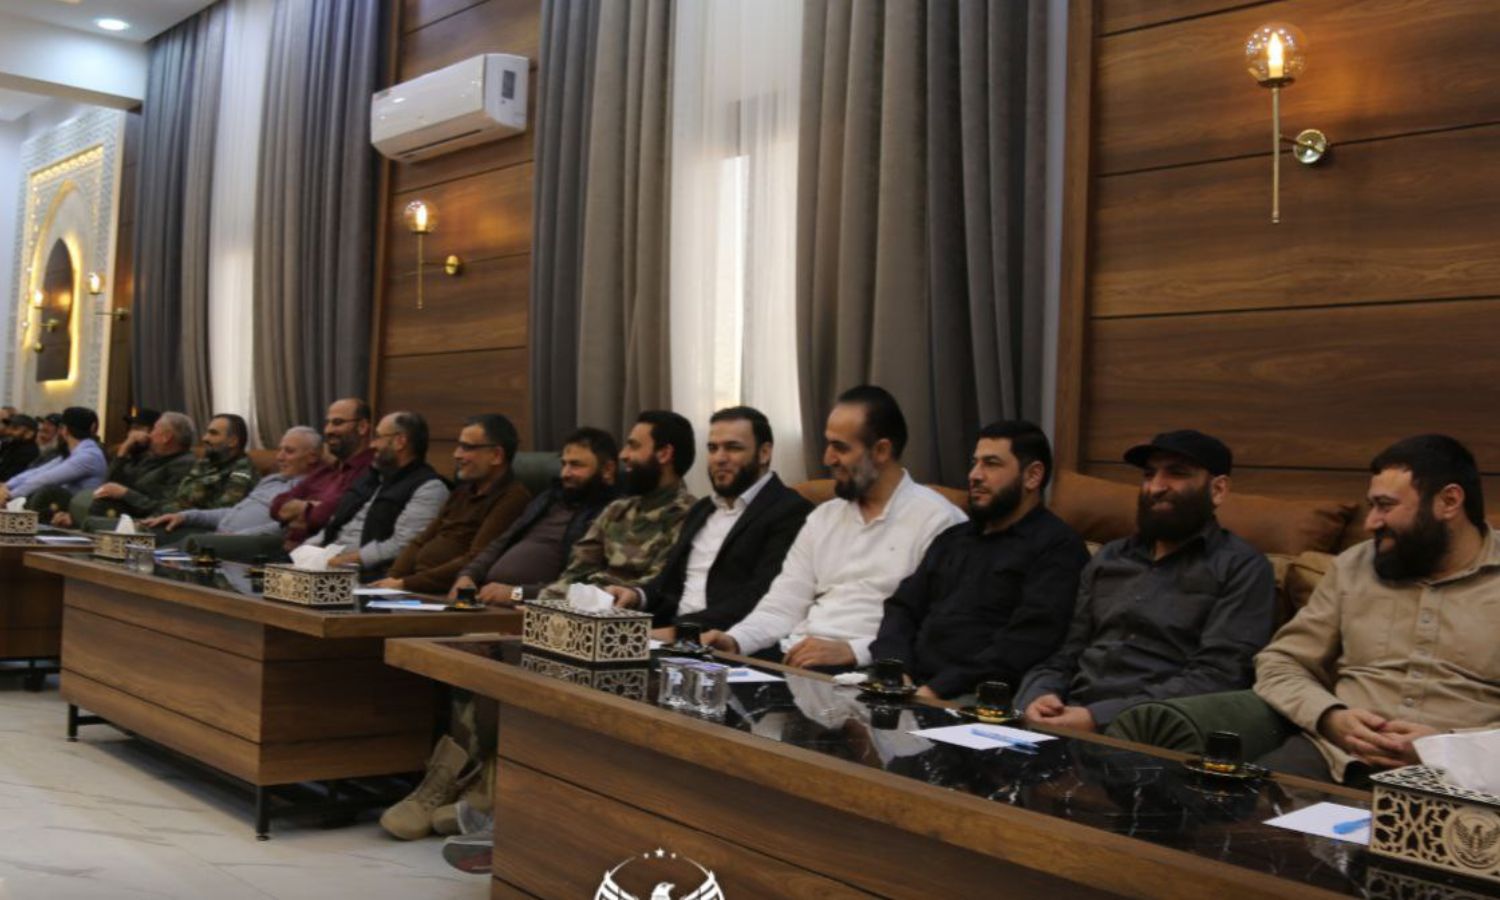 أعضاء وشخصيات في "مجلس الشورى" التابع لـ"الفيلق الثالث" المنضوي تحت راية "الجيش الوطني السوري" المدعوم من تركيا خلال أحد الاجتماعات- 3 من تشرين الثاني 2022 (الفيلق الثالث)